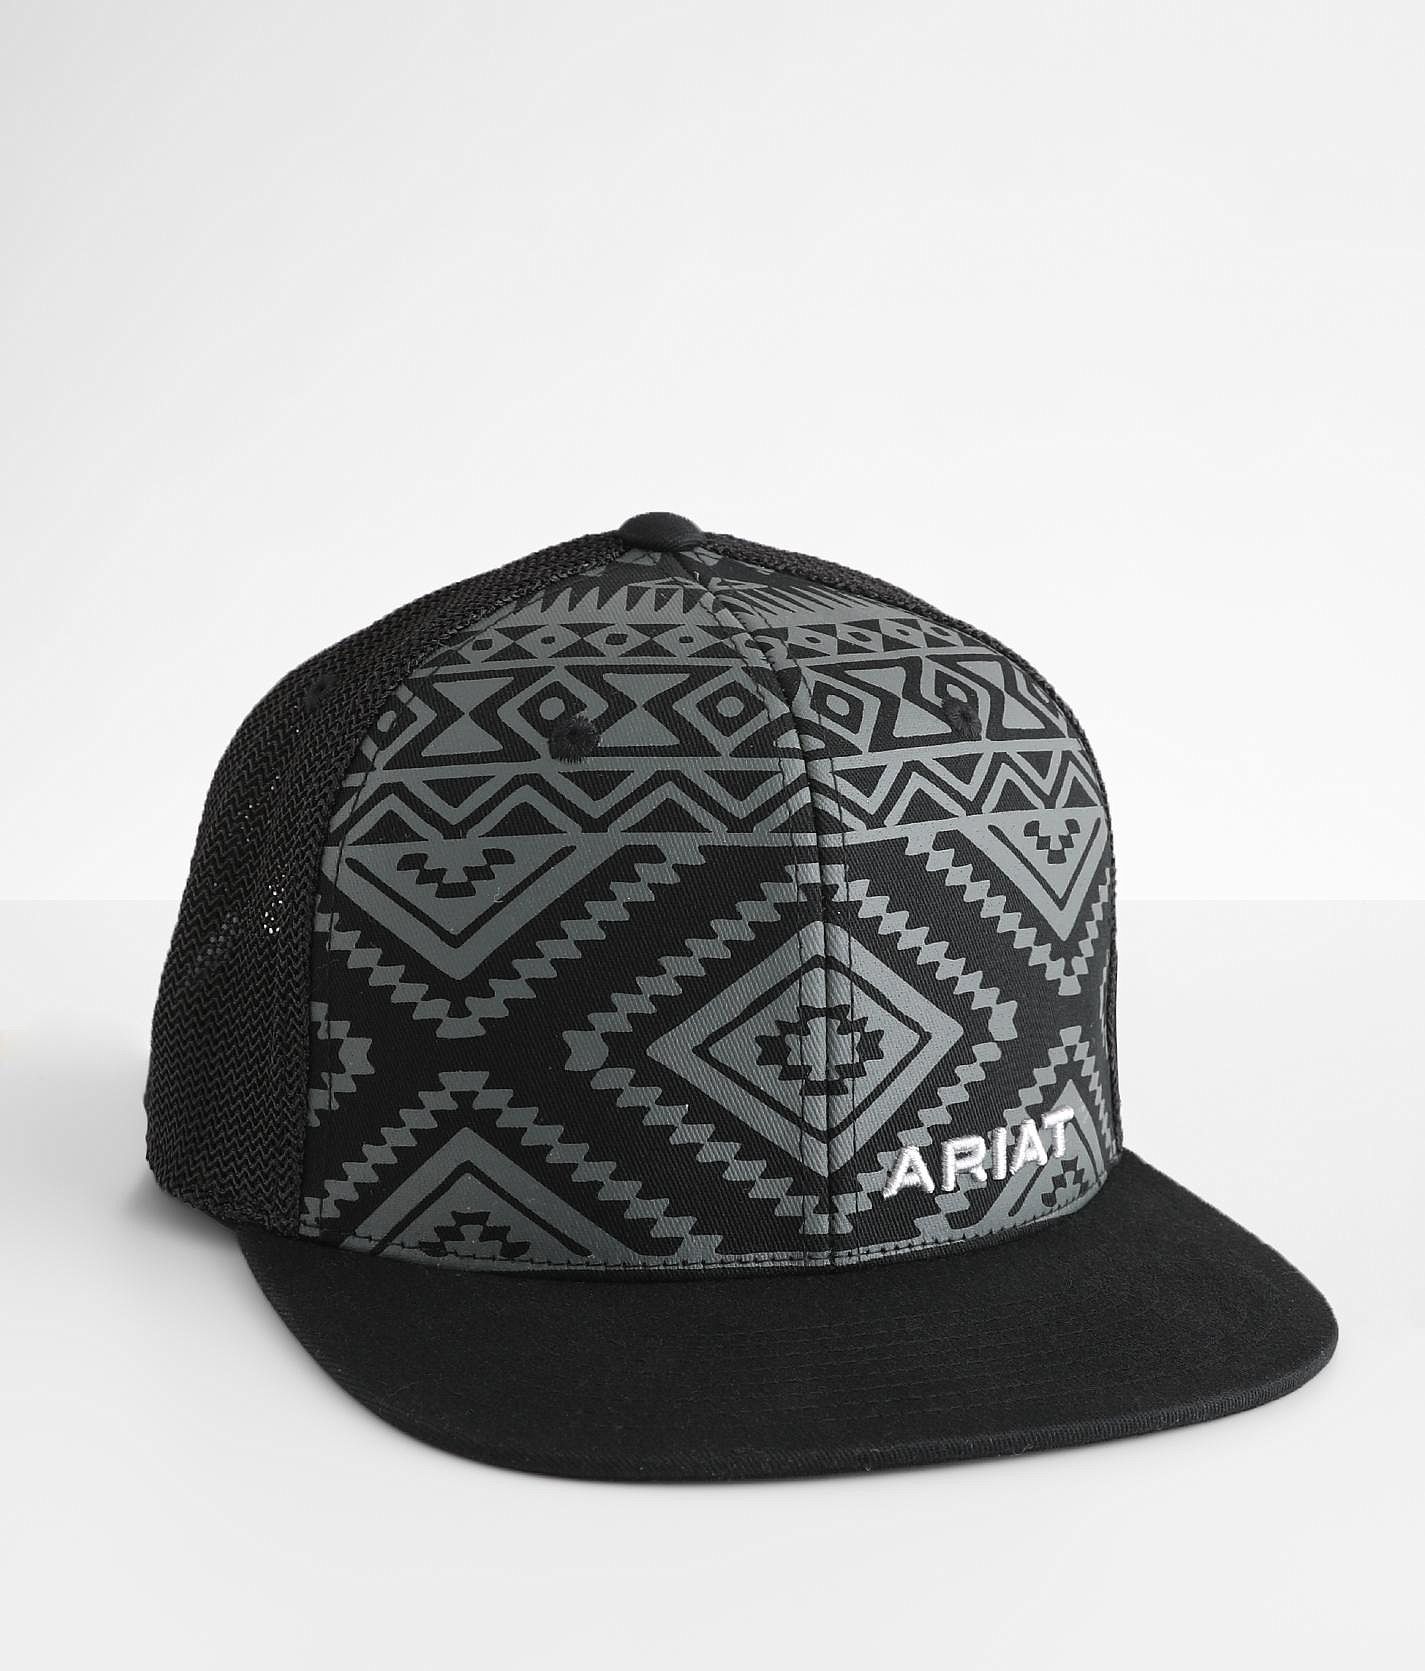 Ariat Aztec 110 Flexfit Trucker Hat - Men's Hats in Black